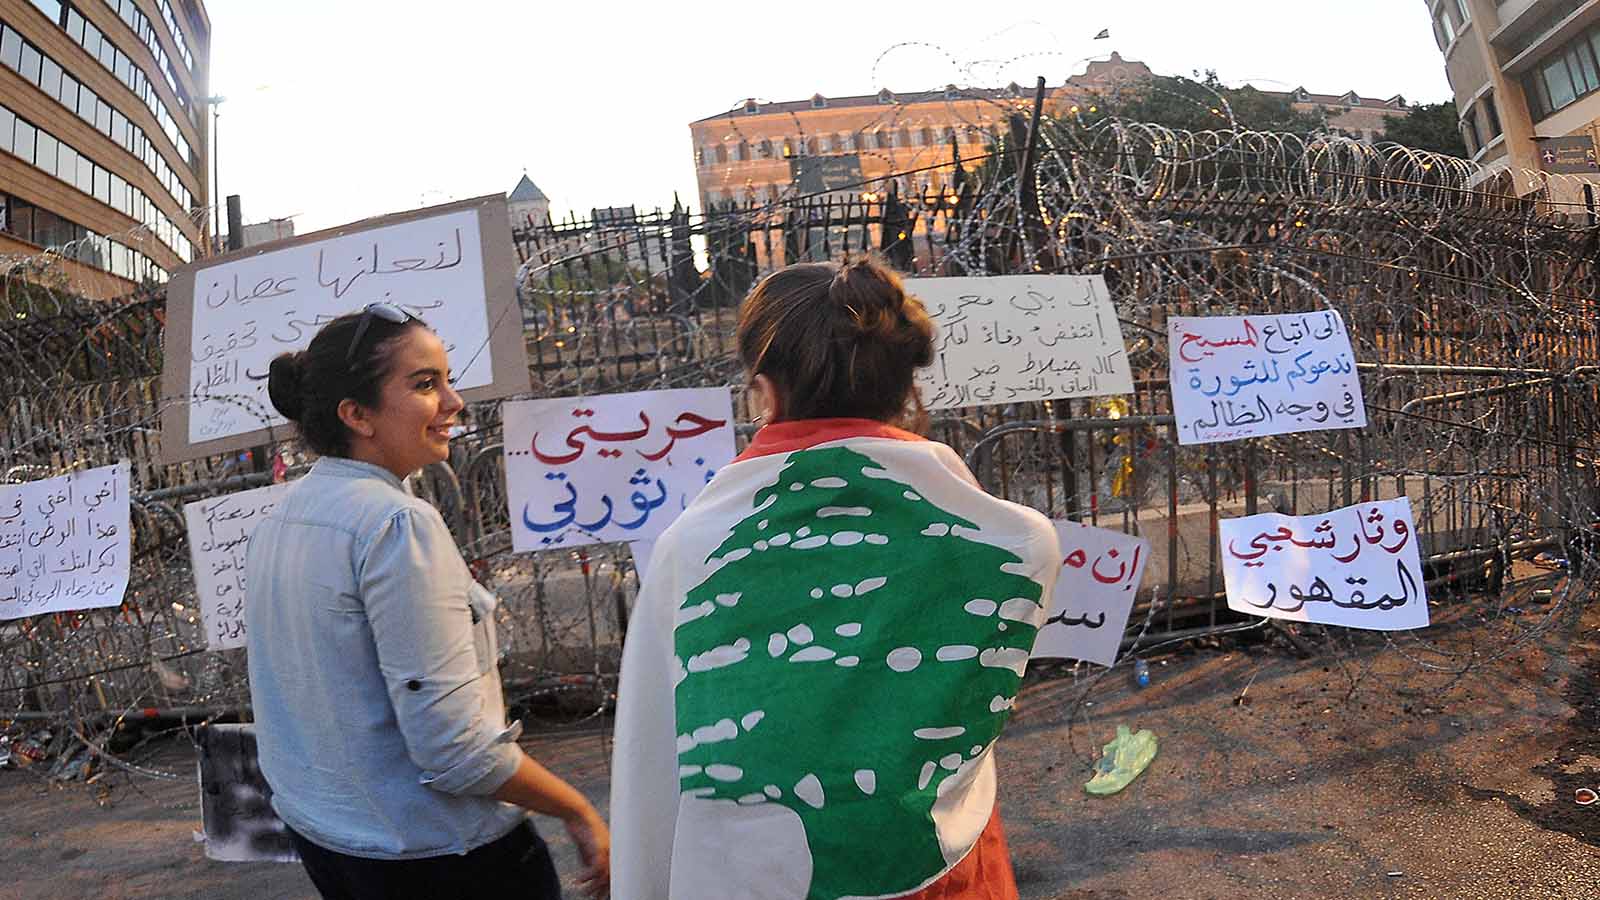 حراك بيروت: السياسة لاحقاً وليس الآن